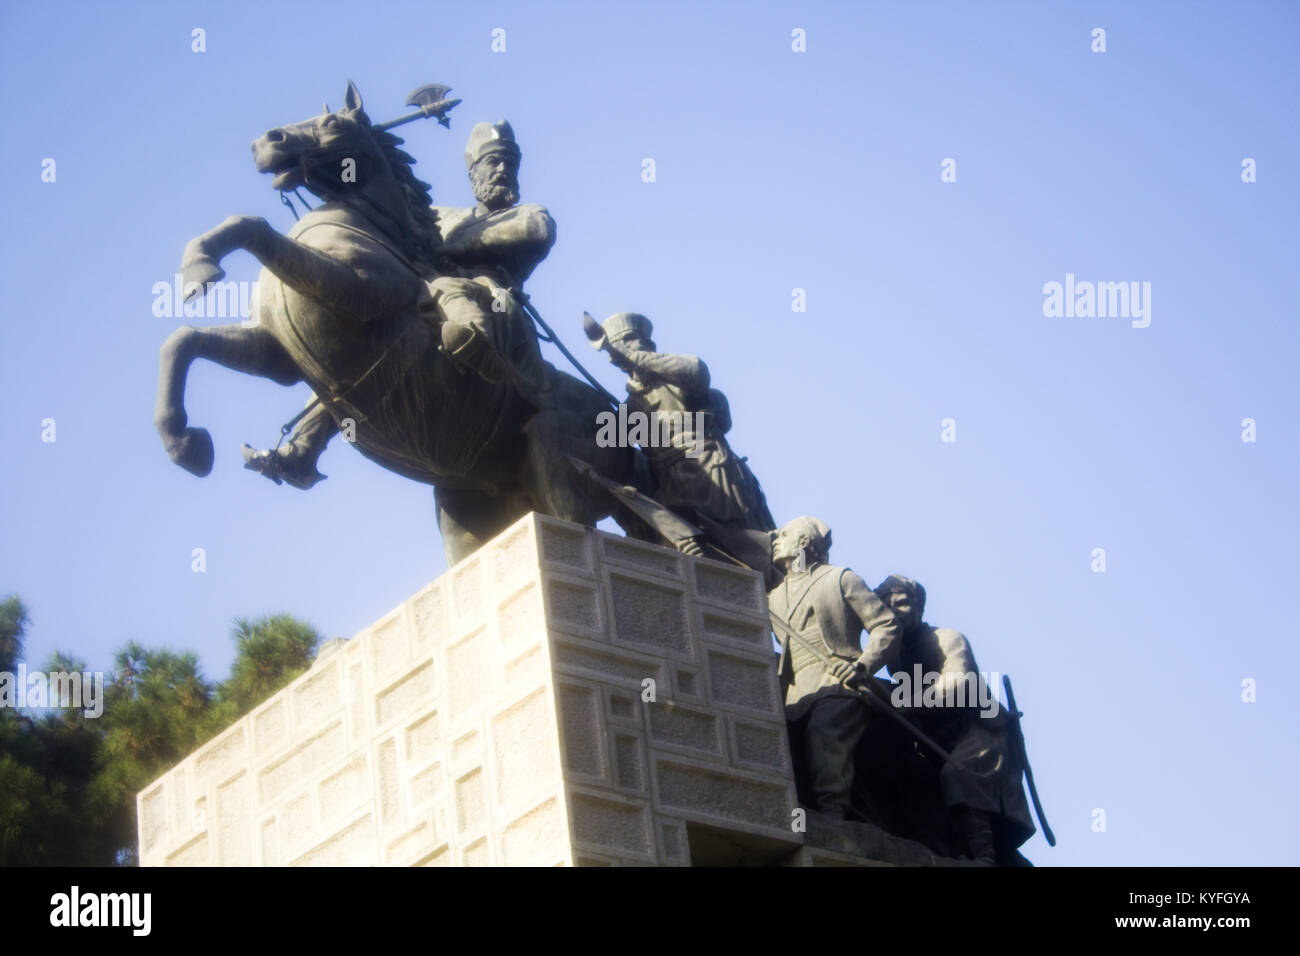 Immagine della statua di Nadir Shah uno dei principali leader dell'Impero Persiano, t è una statua del Shah ed è in sella al suo cavallo e lui era succeede Foto Stock